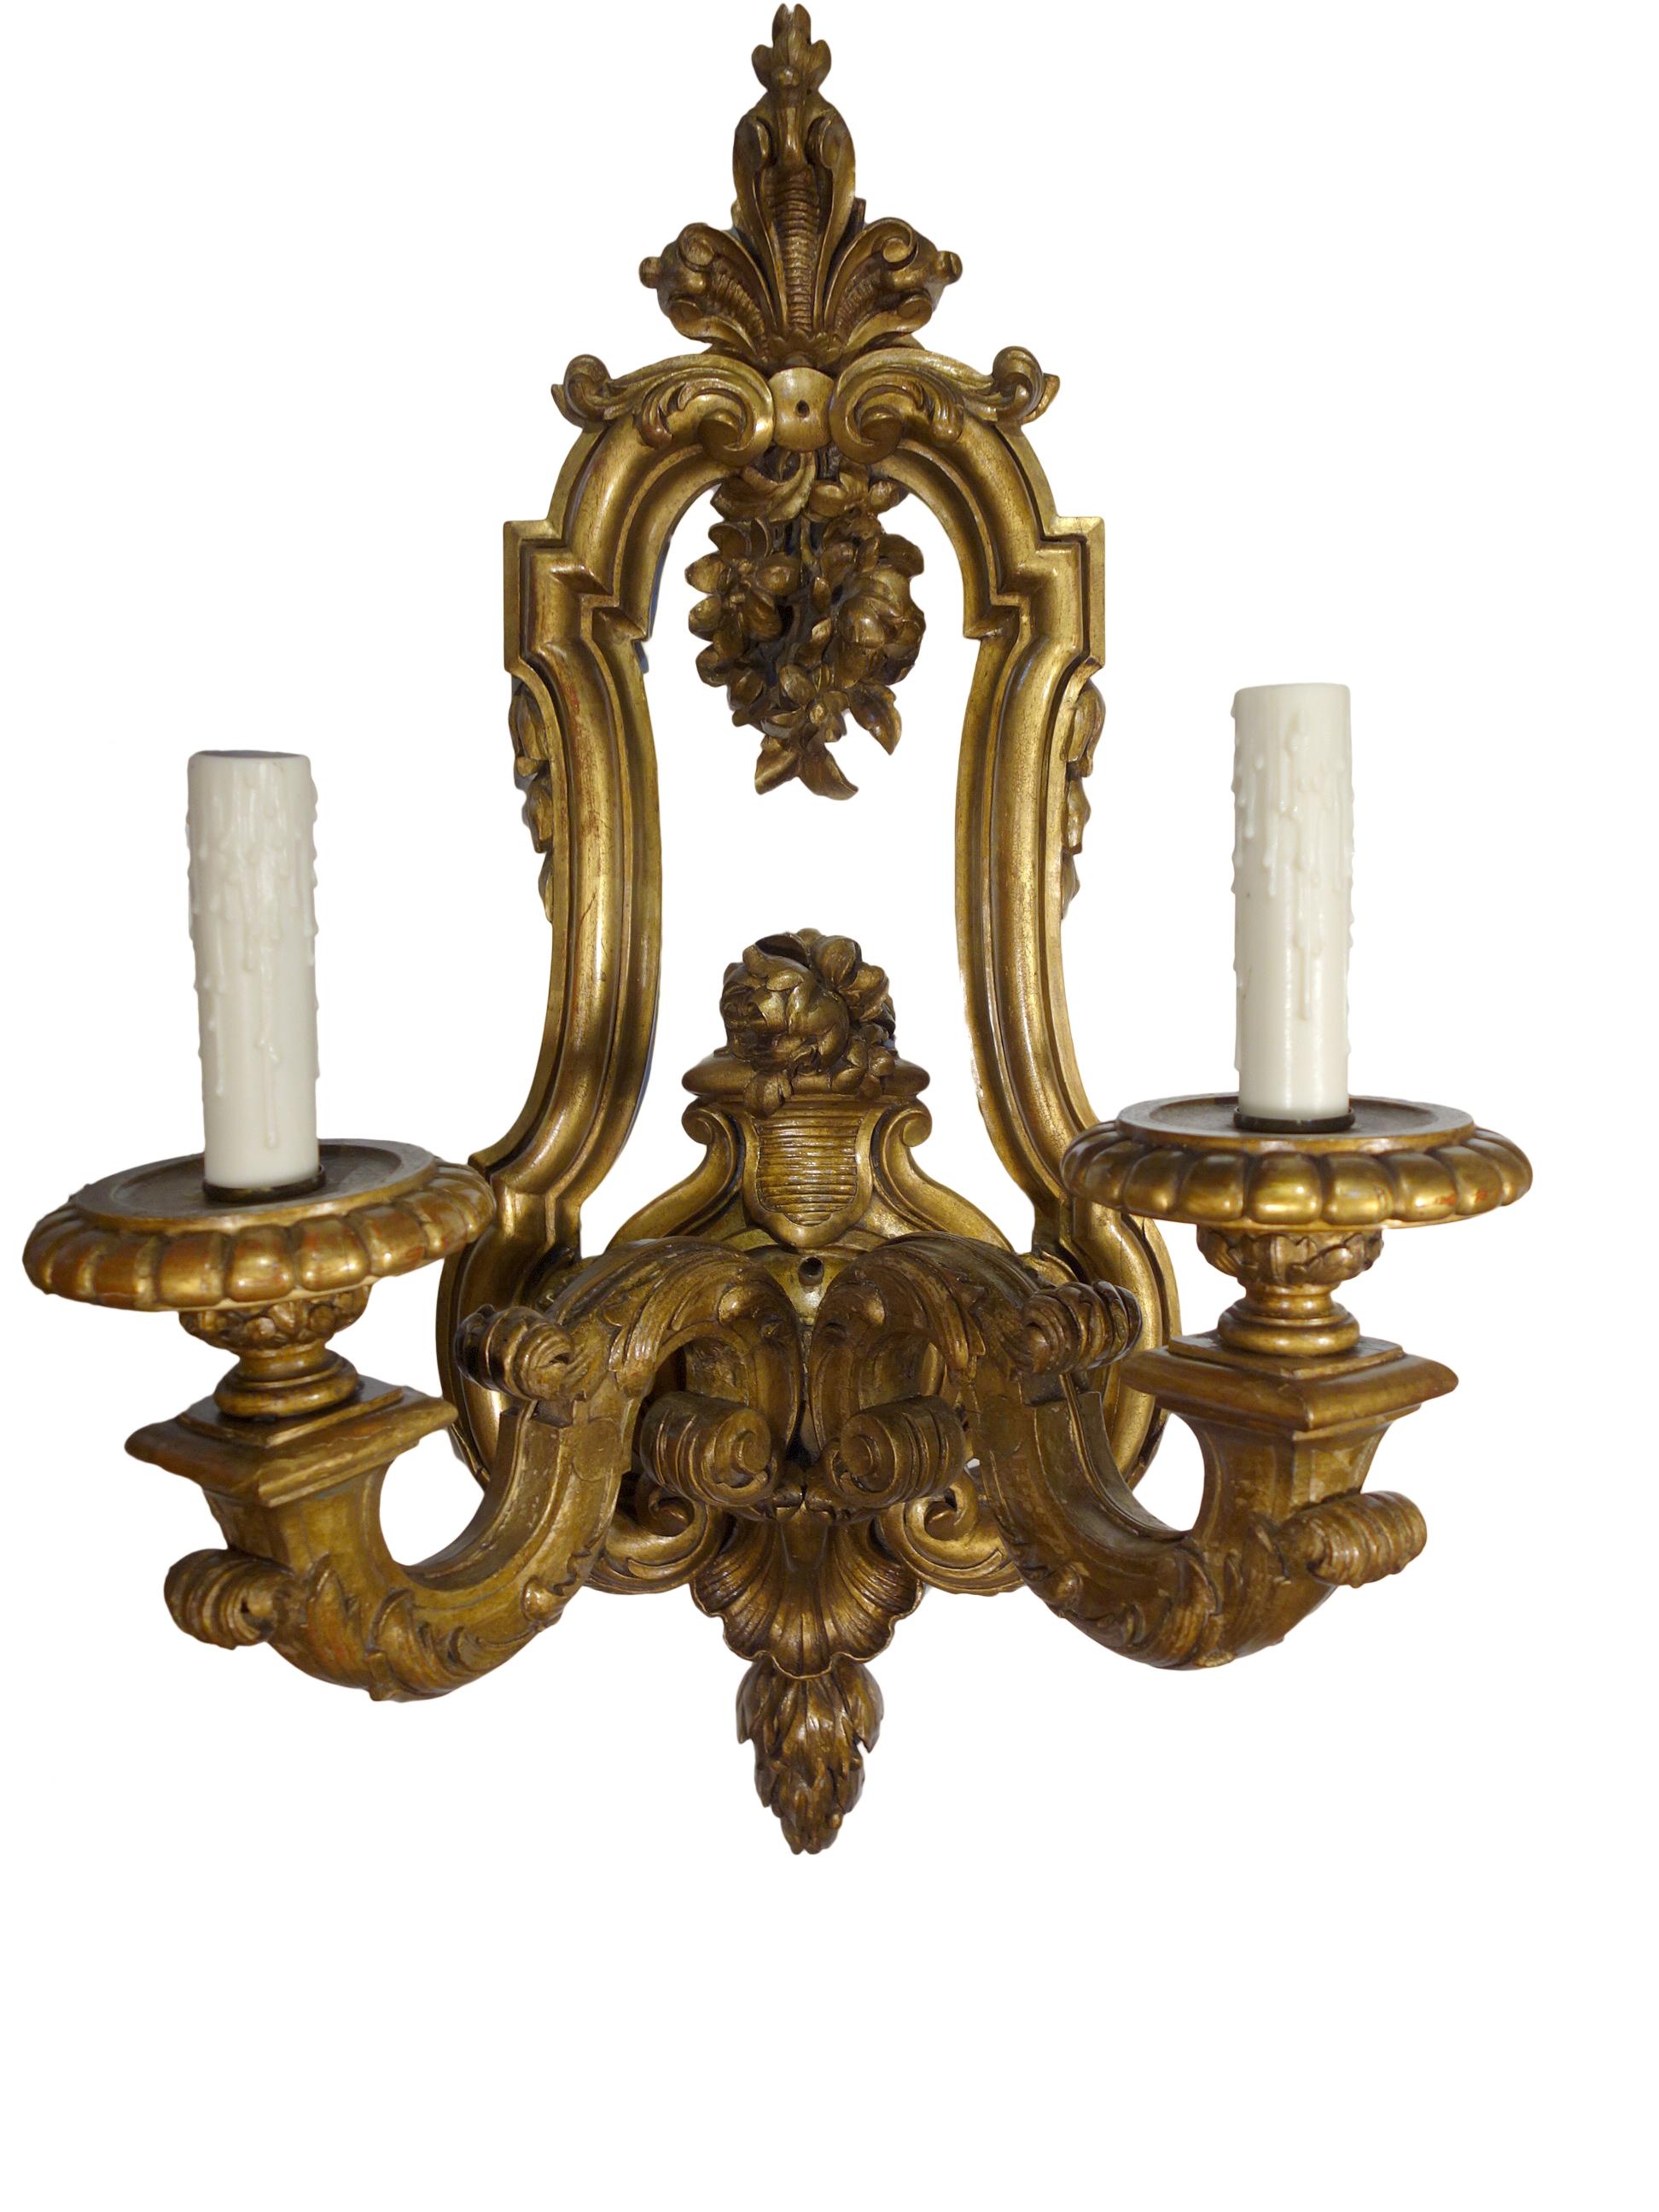 Paire d'appliques à 2 lumières en bois doré de style Louis XIV. Reproduction italienne de qualité, grande échelle,  ces appliques sont sculptées à la main et ornées de détails, vers 1930. Recâblage et restauration professionnels, douilles à base